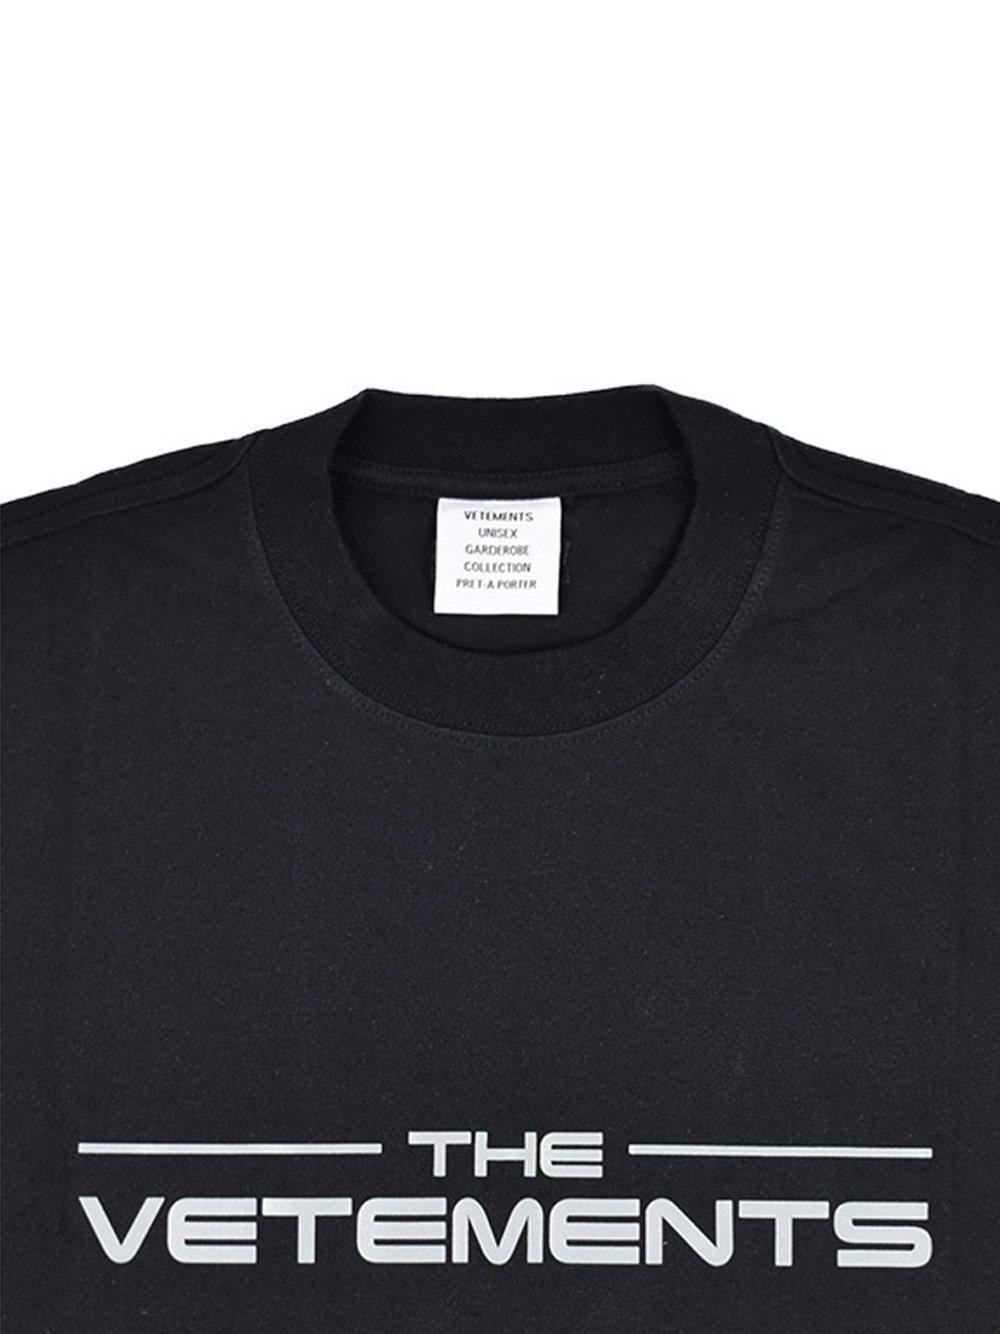 Vetements Logo T-shirt Black for Men - Lyst